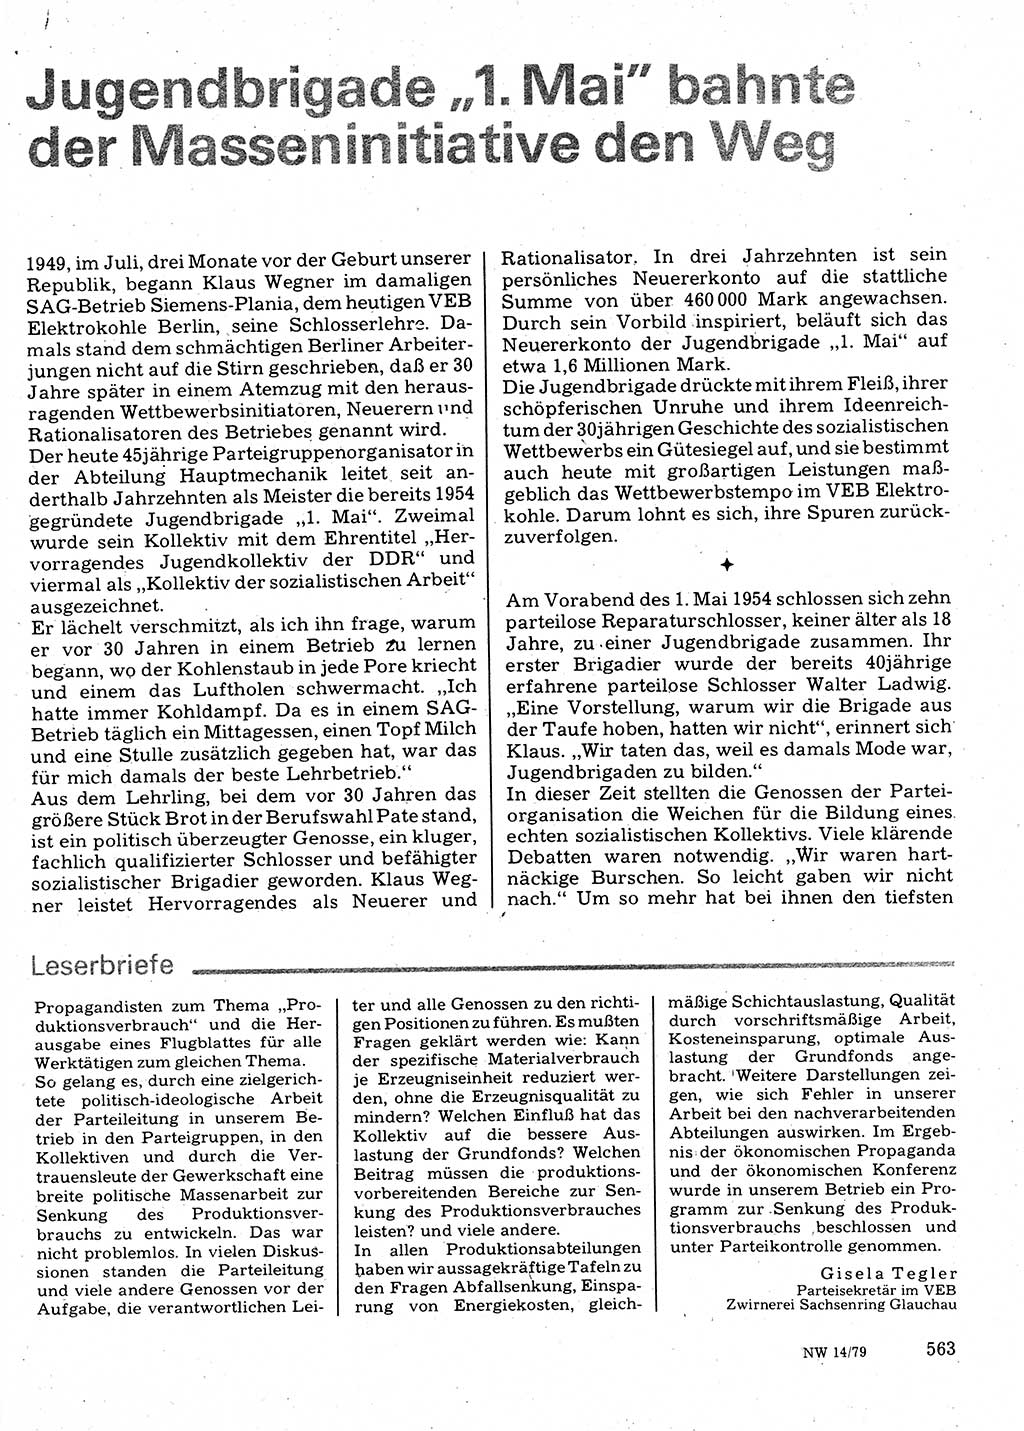 Neuer Weg (NW), Organ des Zentralkomitees (ZK) der SED (Sozialistische Einheitspartei Deutschlands) für Fragen des Parteilebens, 34. Jahrgang [Deutsche Demokratische Republik (DDR)] 1979, Seite 563 (NW ZK SED DDR 1979, S. 563)